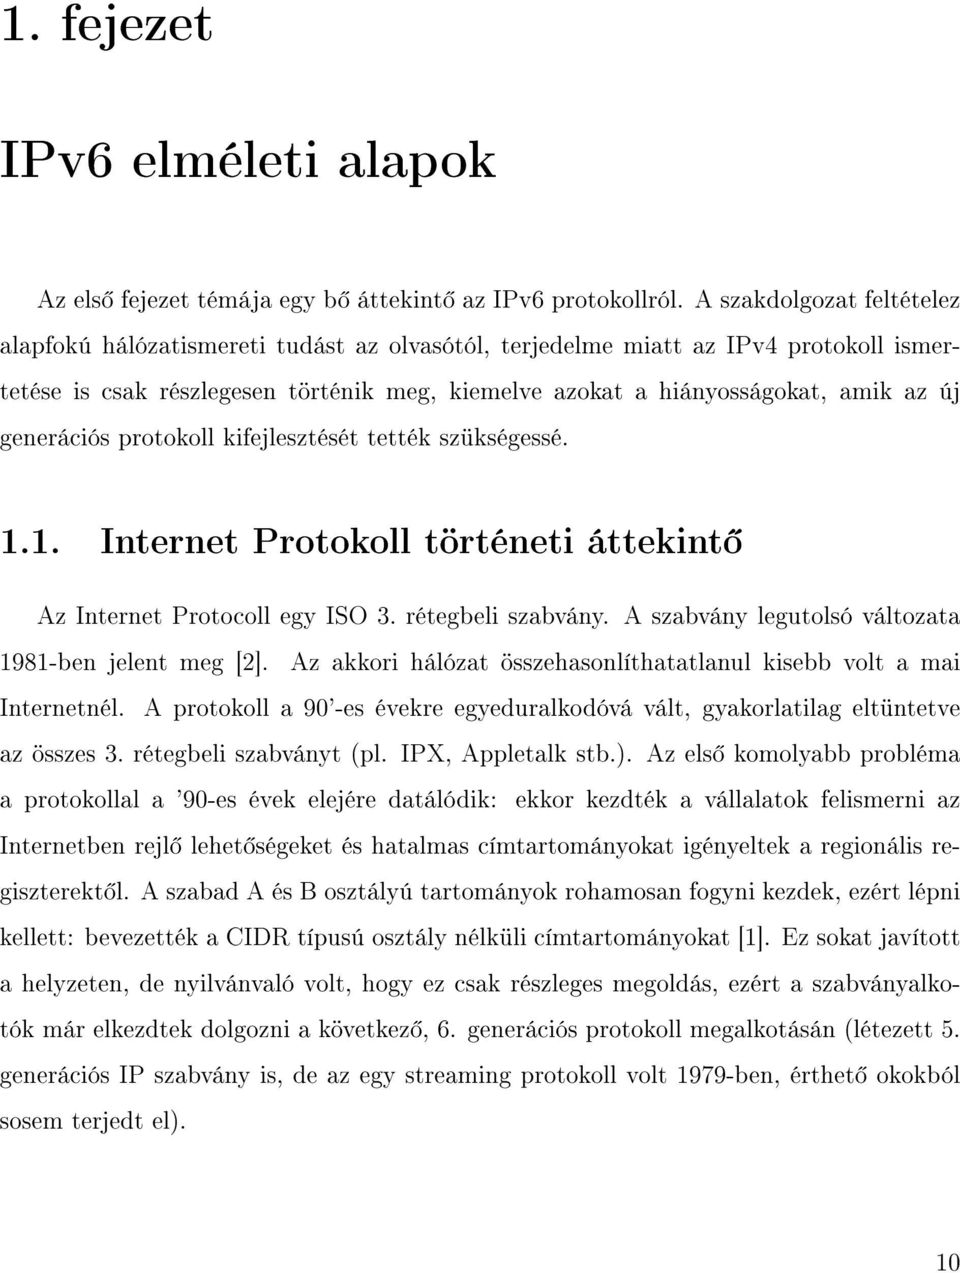 generációs protokoll kifejlesztését tették szükségessé. 1.1. Internet Protokoll történeti áttekint Az Internet Protocoll egy ISO 3. rétegbeli szabvány.